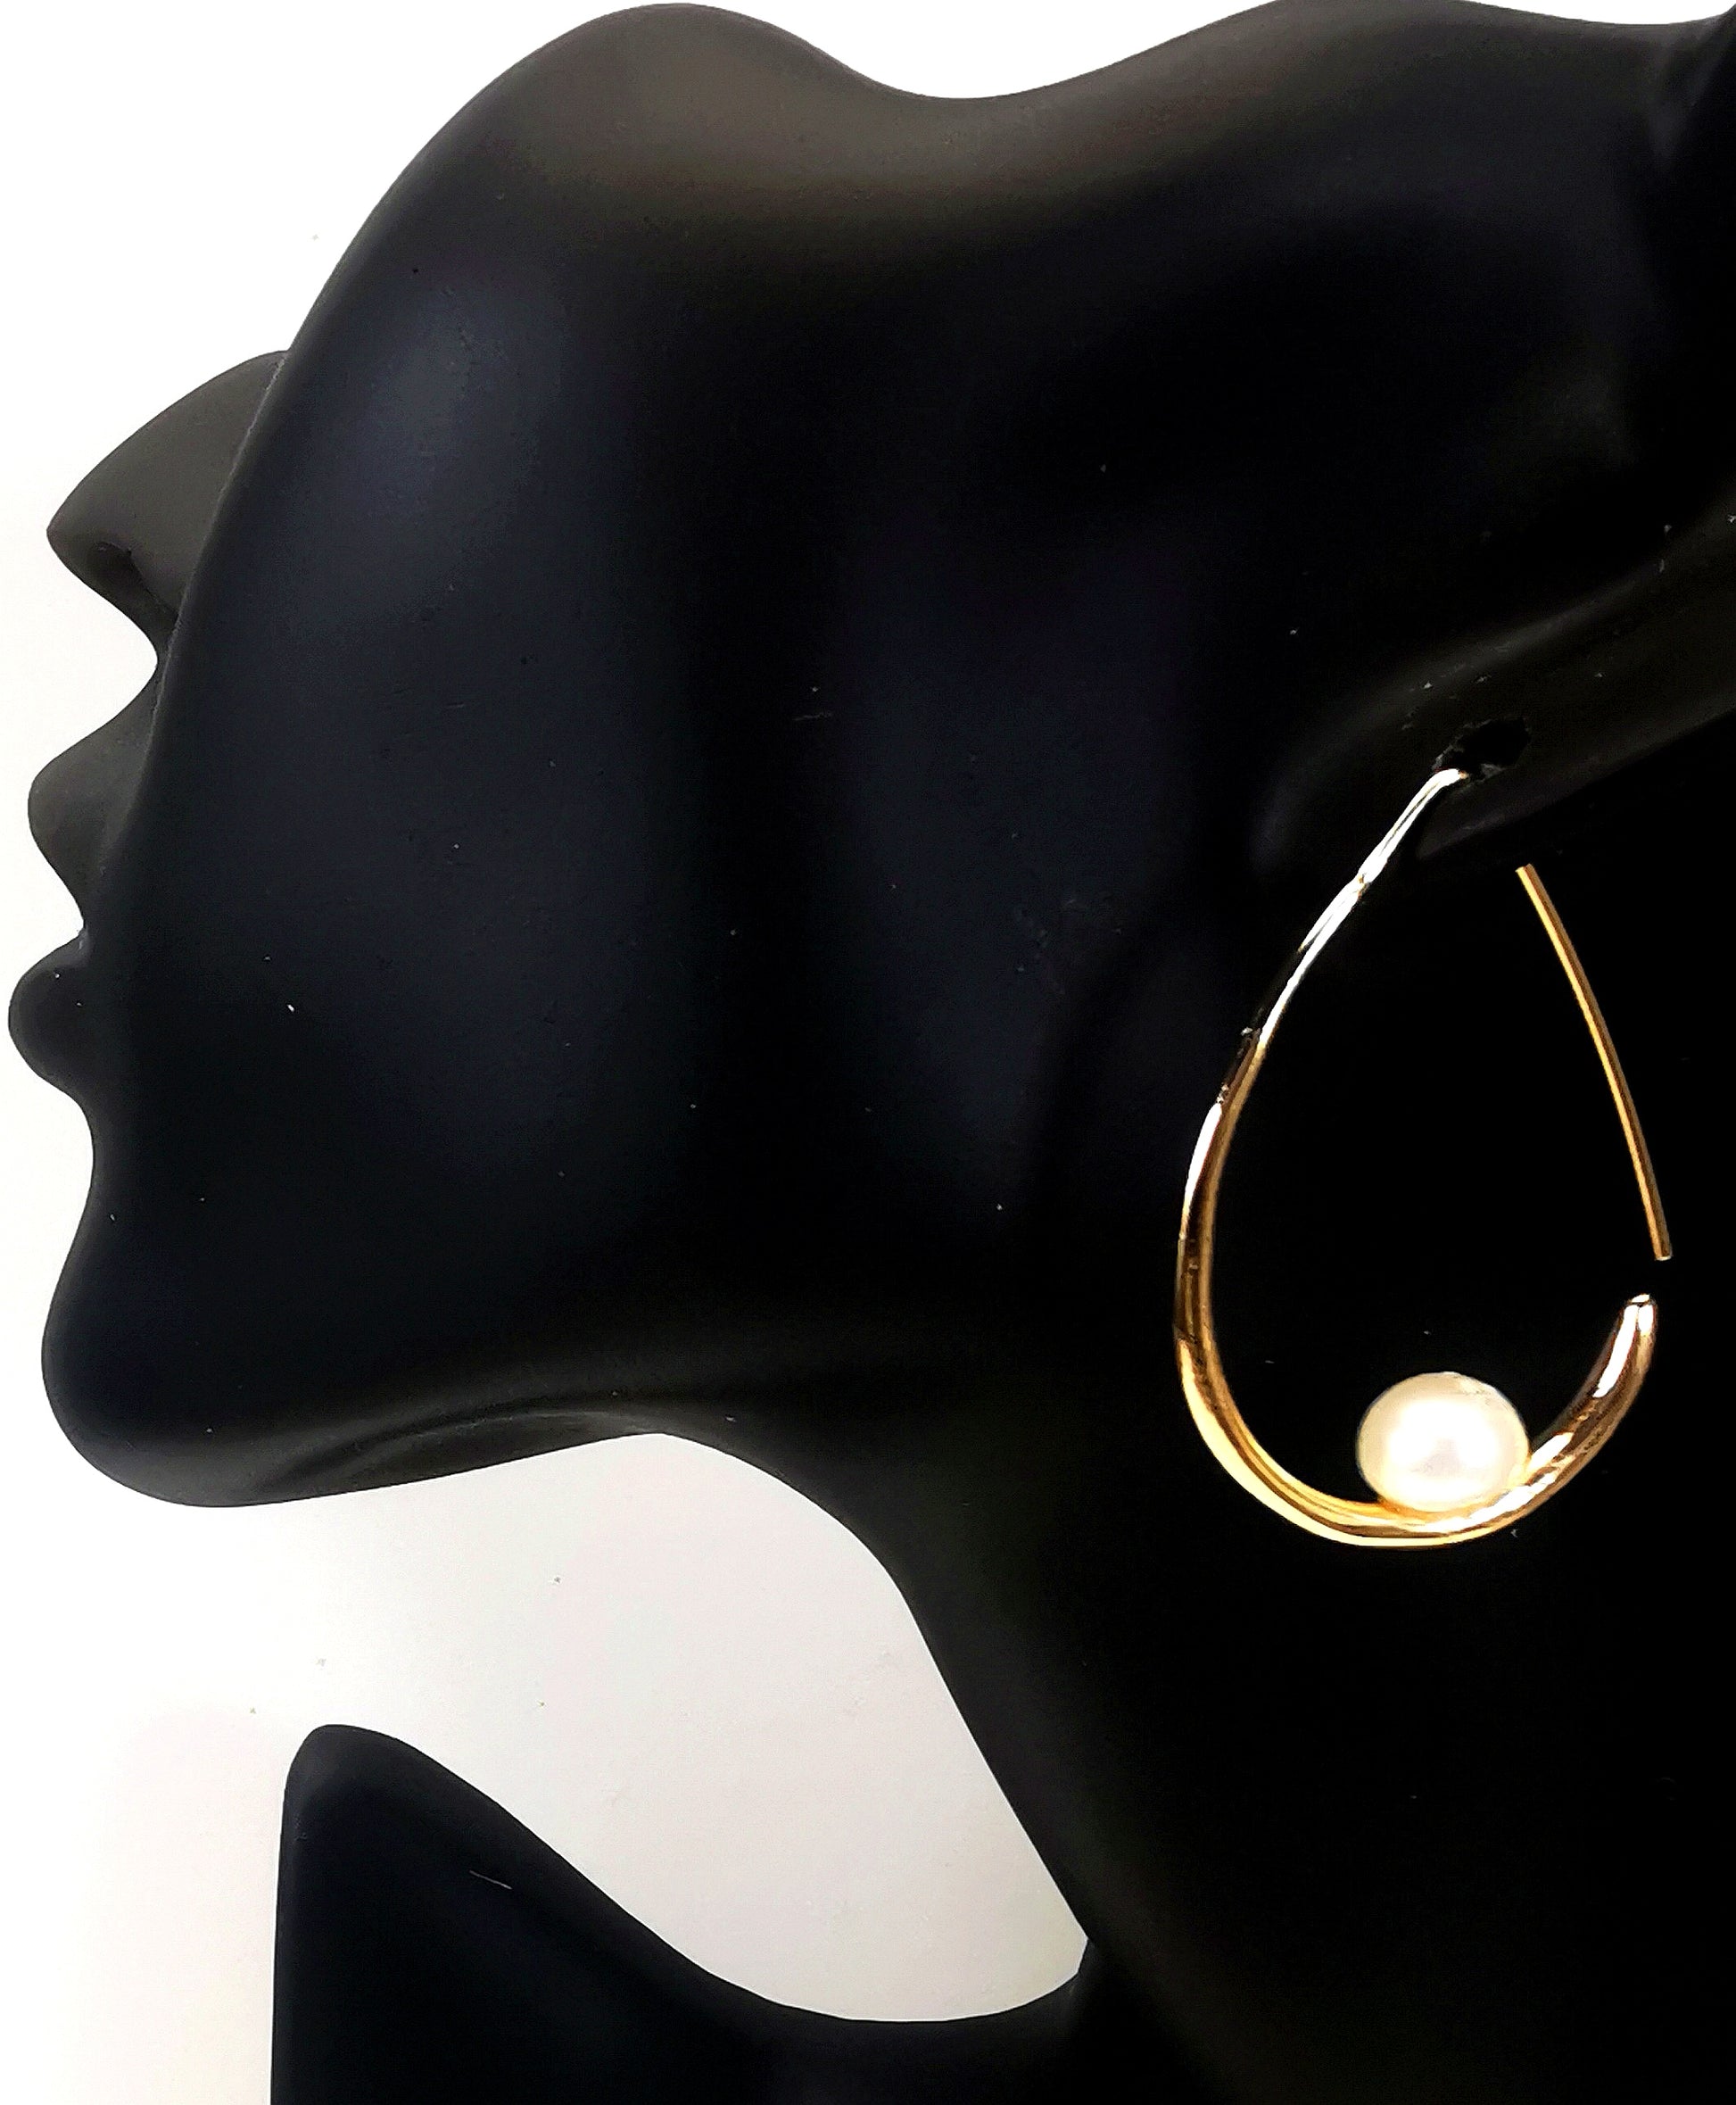 Boucles d'oreilles perles de culture blanches 8mm montées sur un pendant plaqué or. Ces pendants ont la forme d'un contour de poire de 40mm de haut, plus épais en bas avec un brin arrière fin pour pouvoir être enfilé sur l'oreille. Représentées par une boucle suspendue à l'oreille d'un mannequin buste noir. Vue en plan large de coté.